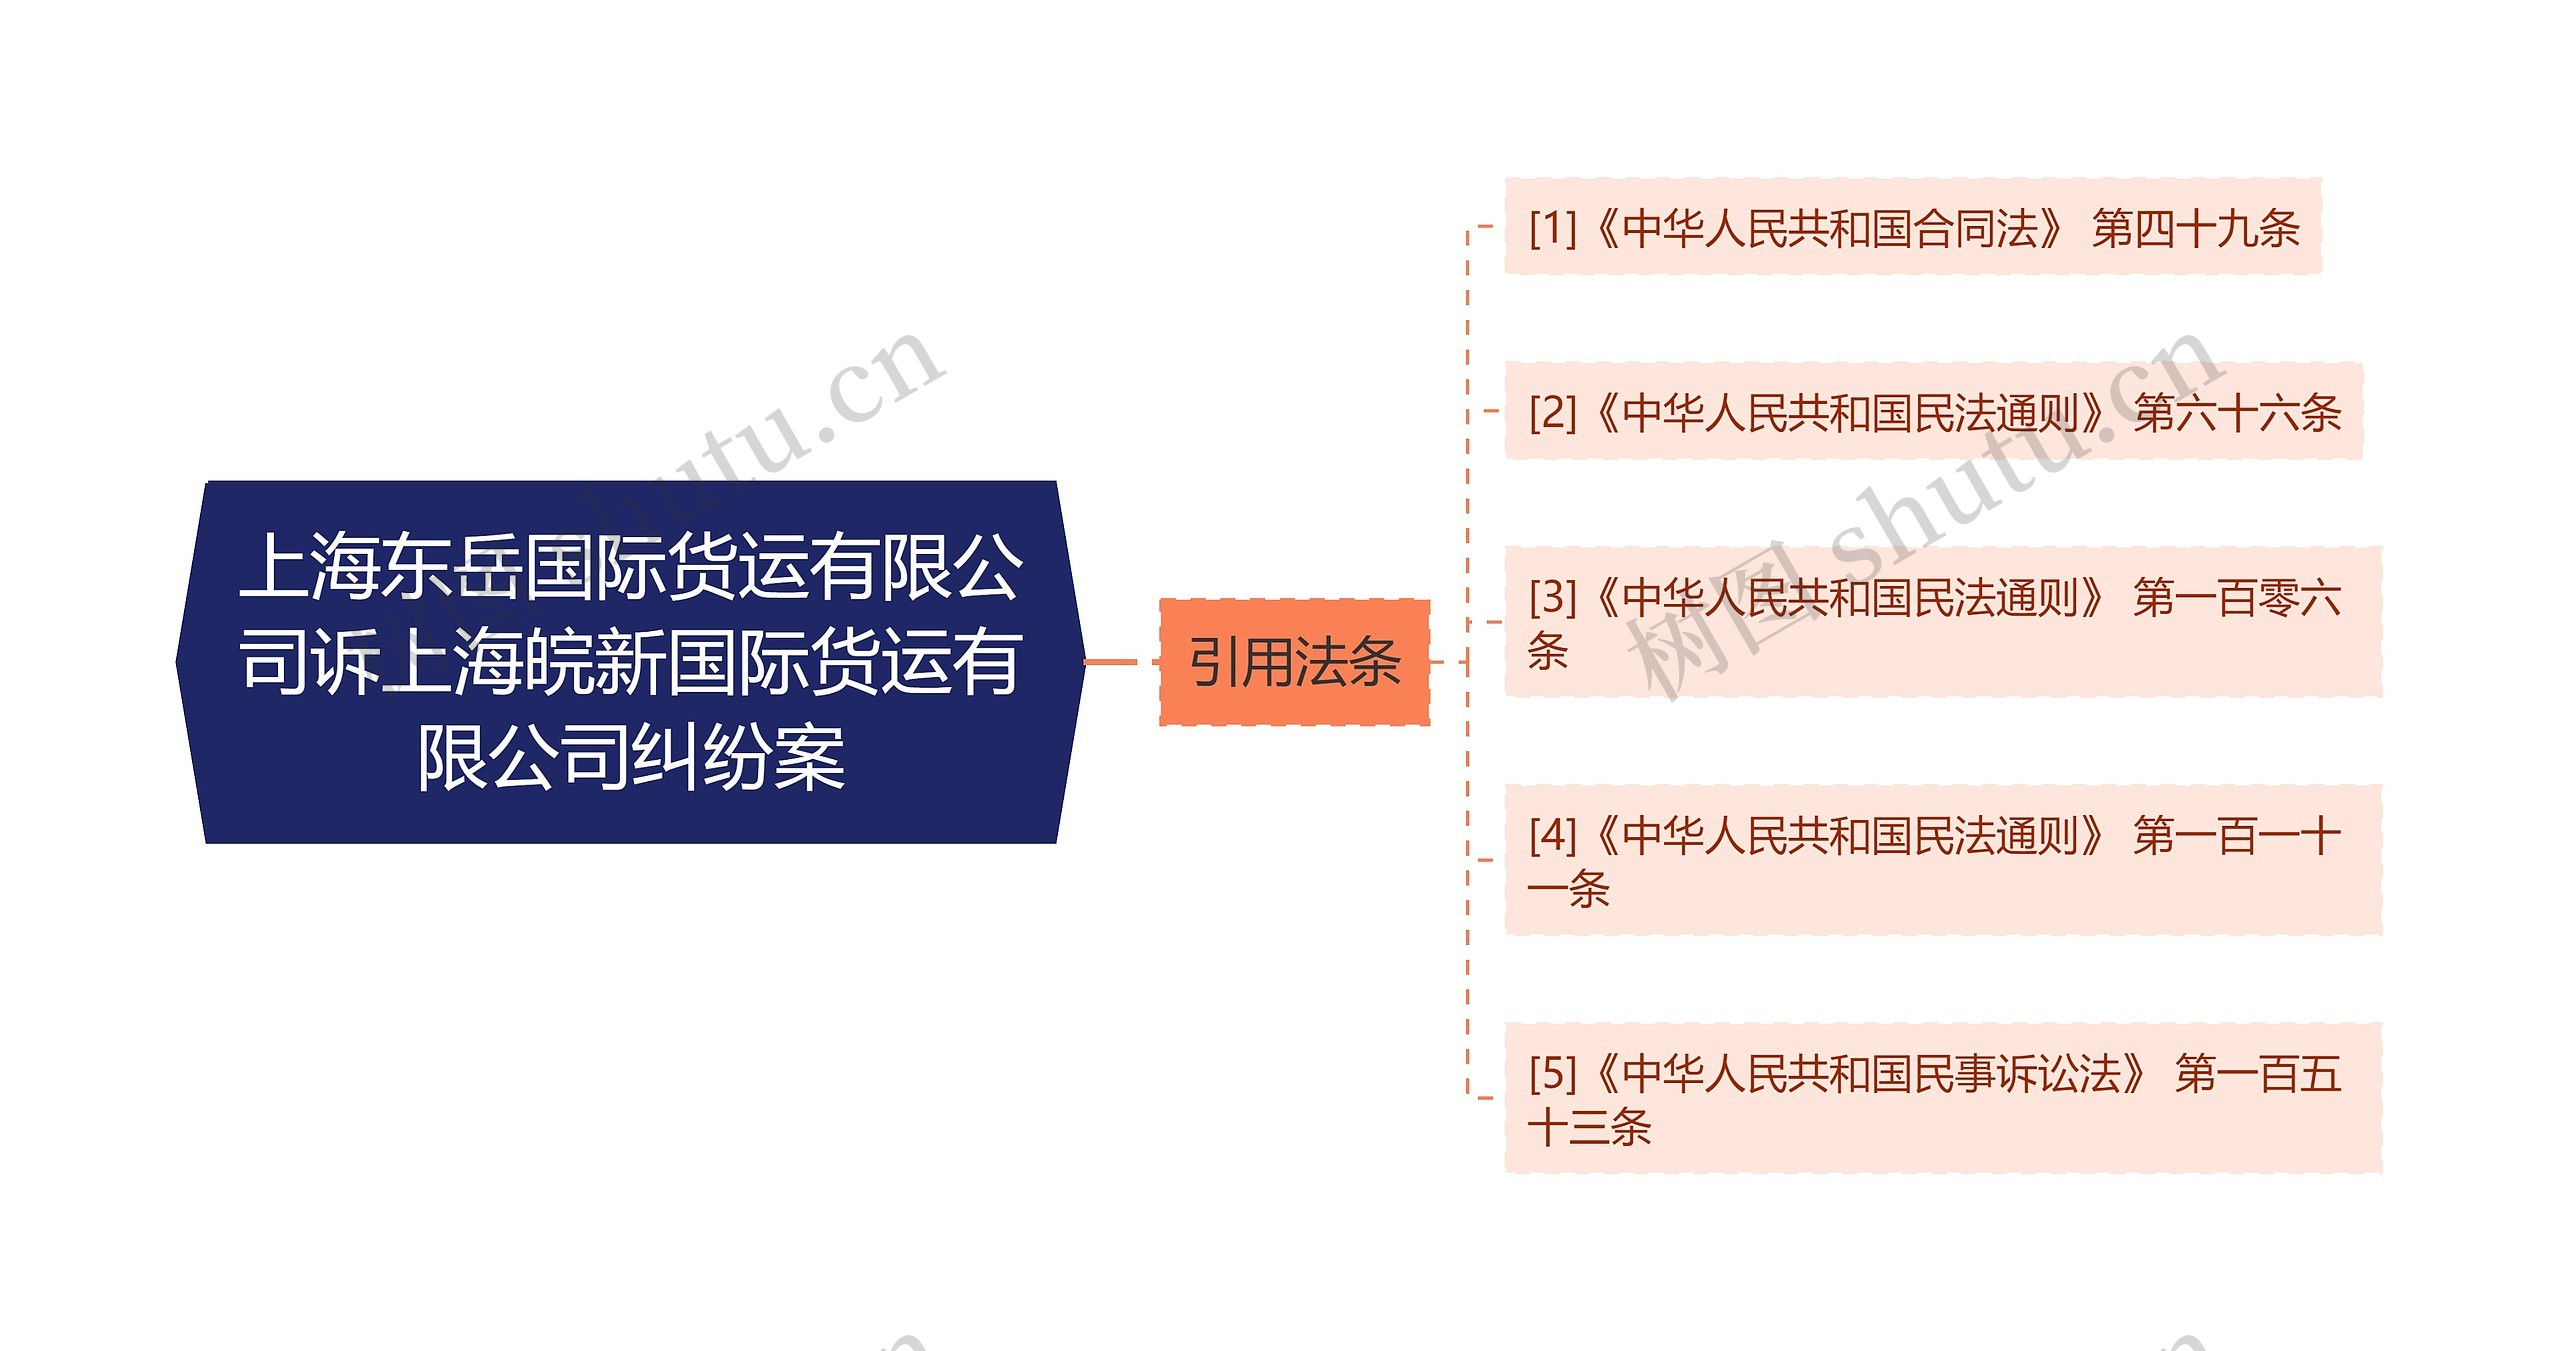 上海东岳国际货运有限公司诉上海皖新国际货运有限公司纠纷案思维导图